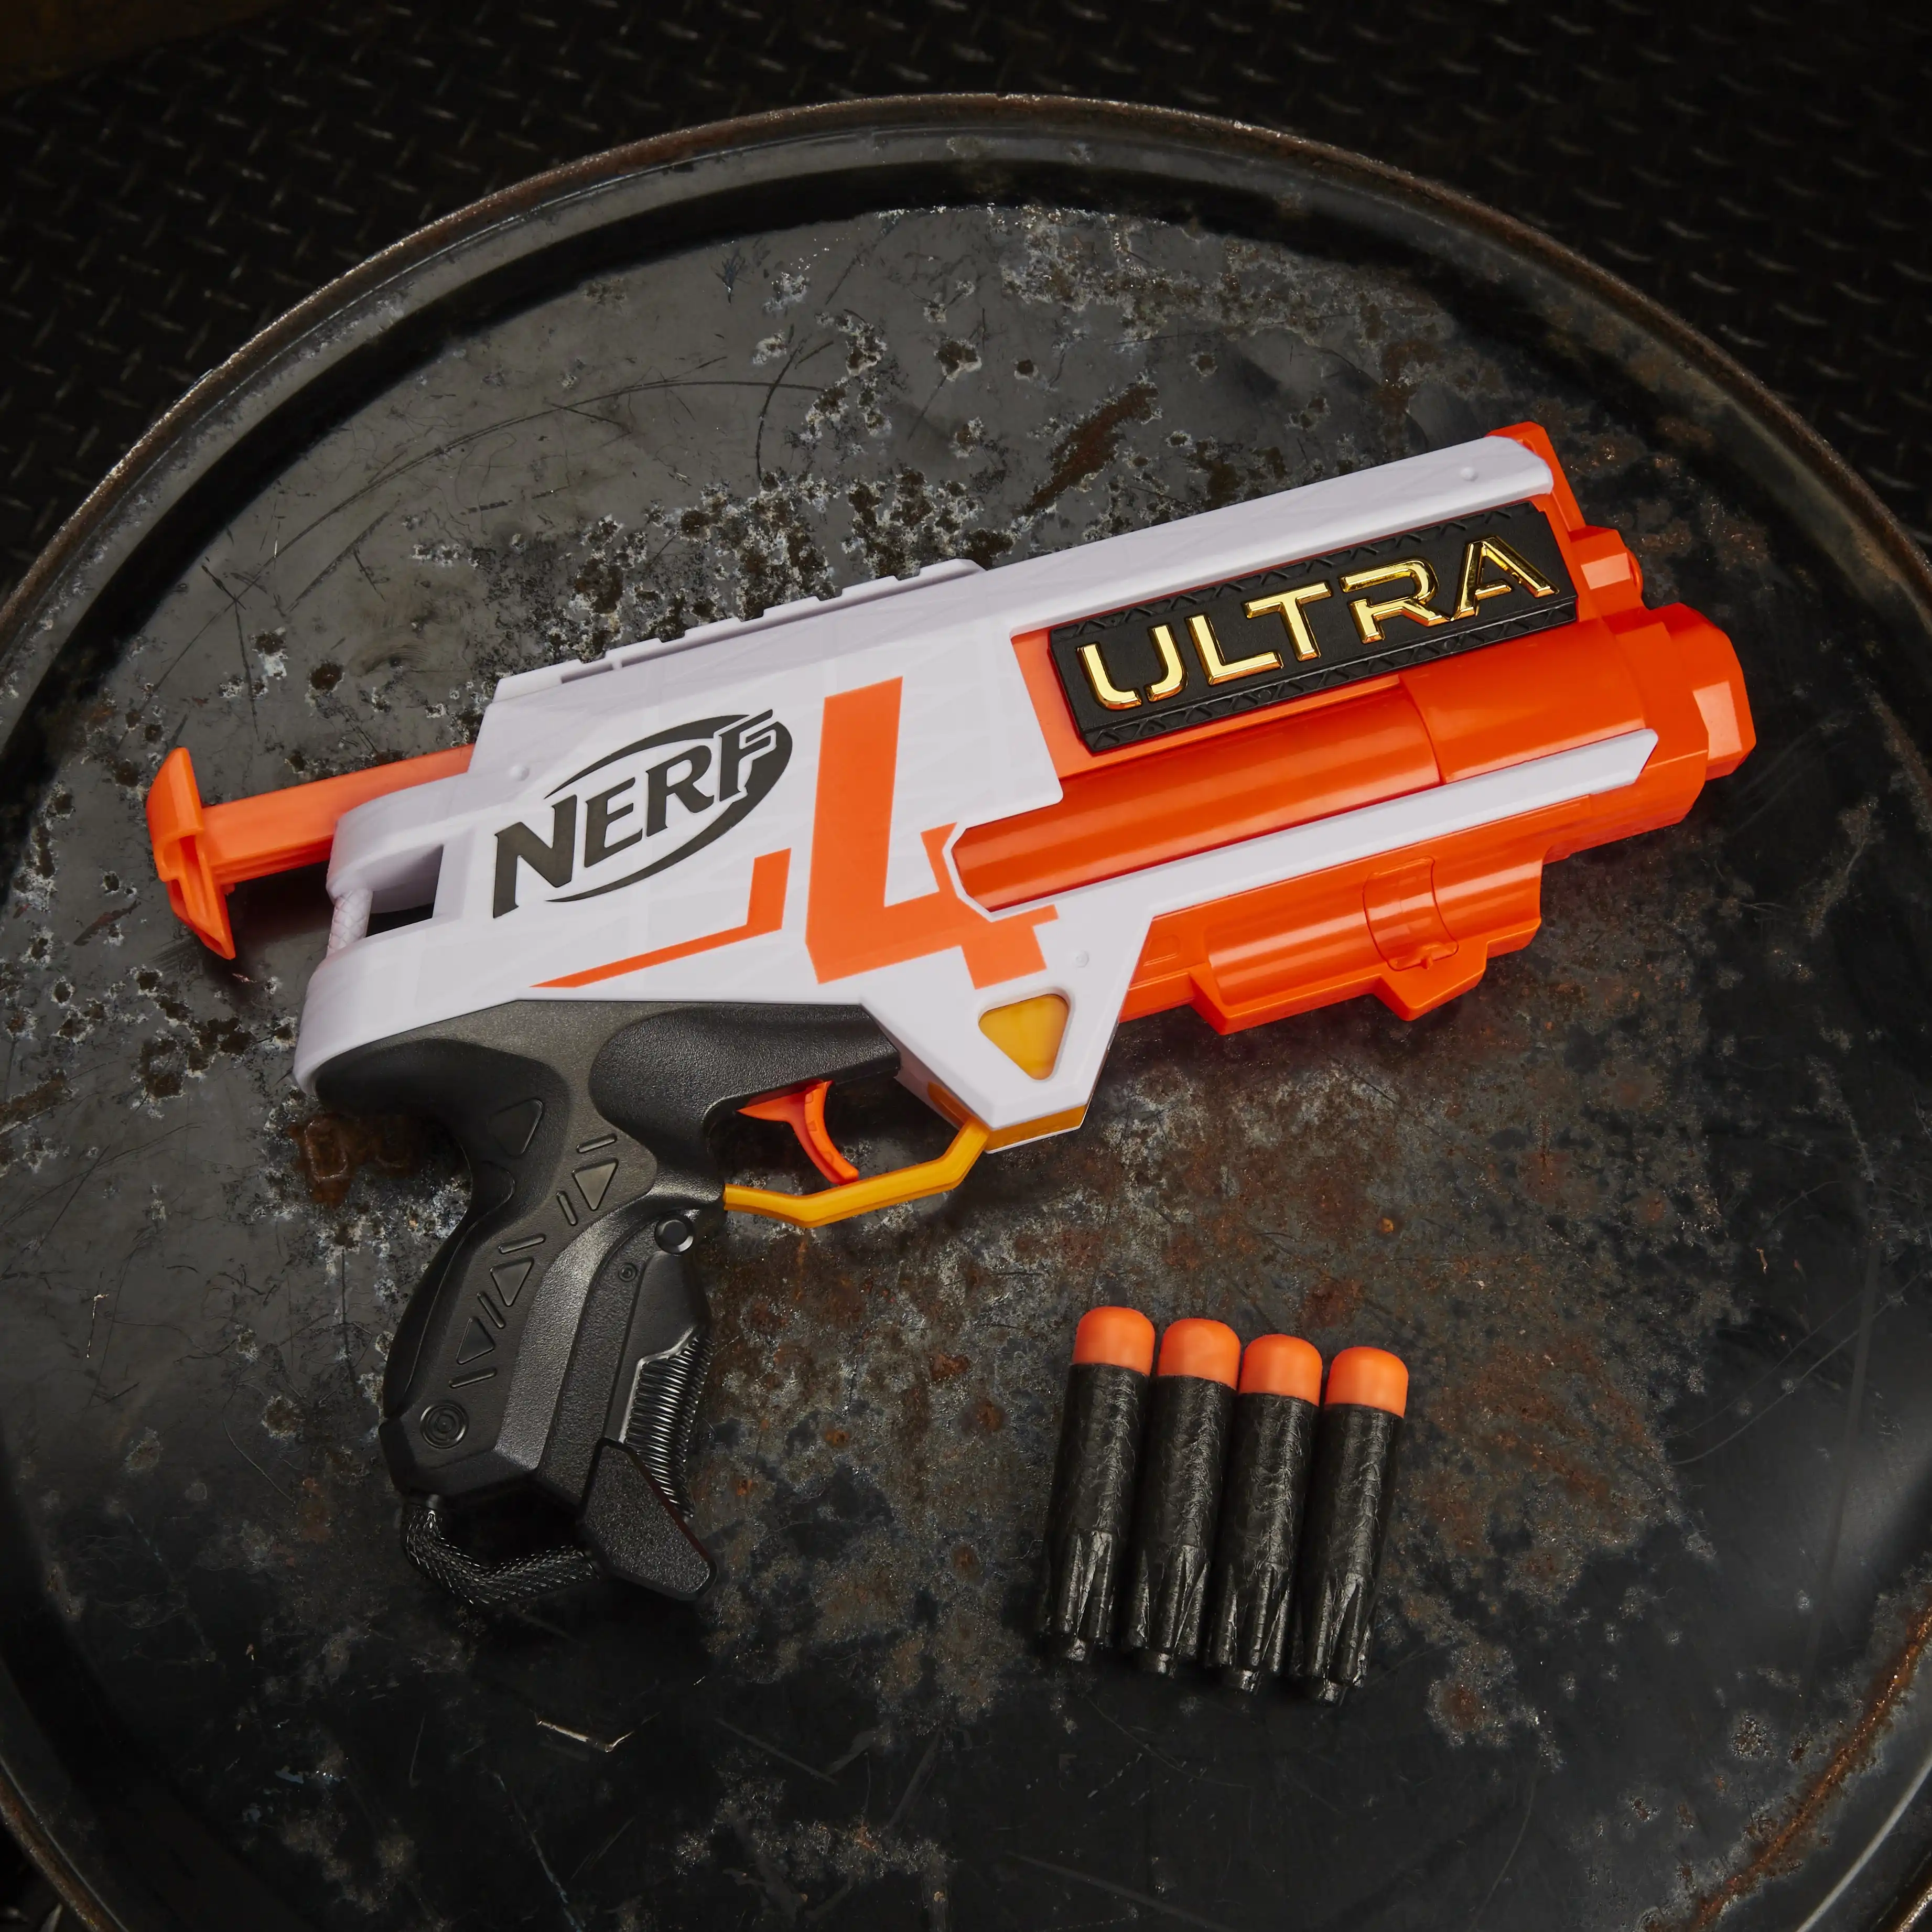 Nerf Ultra Four Blaster